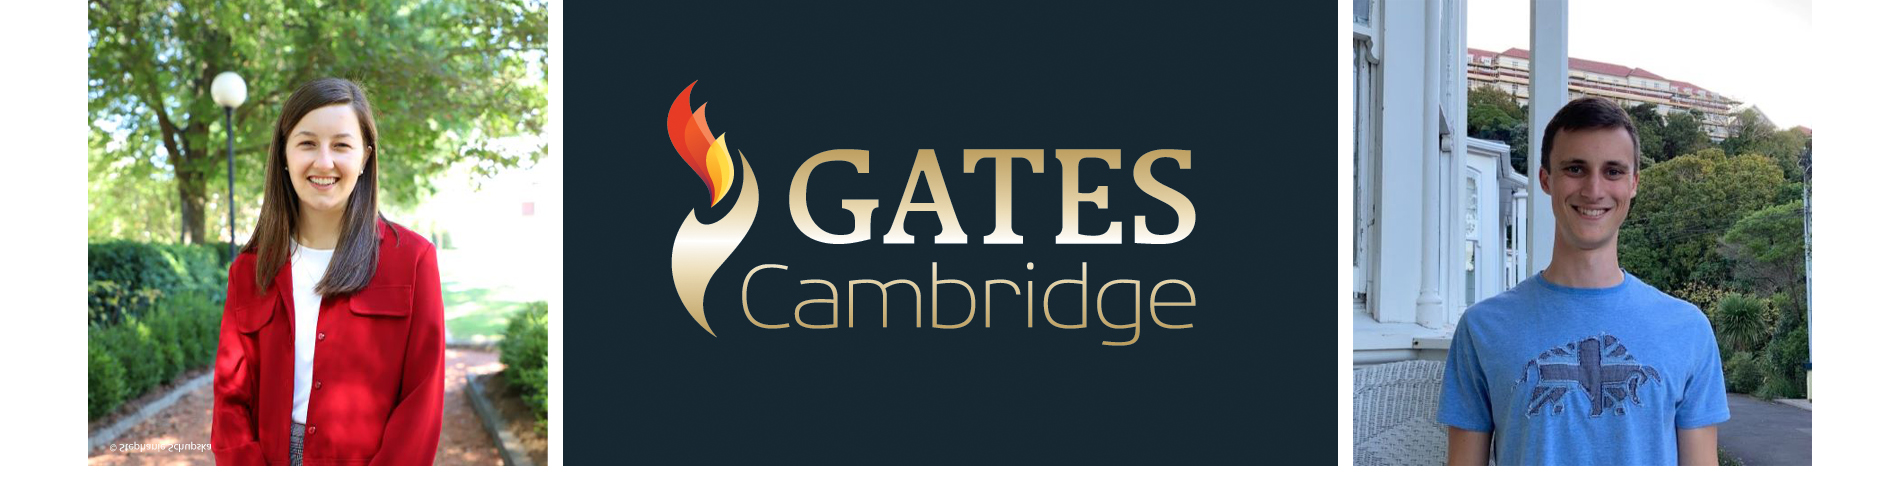 Claire Bunn, Gates Cambridge logo and Caleb Todd